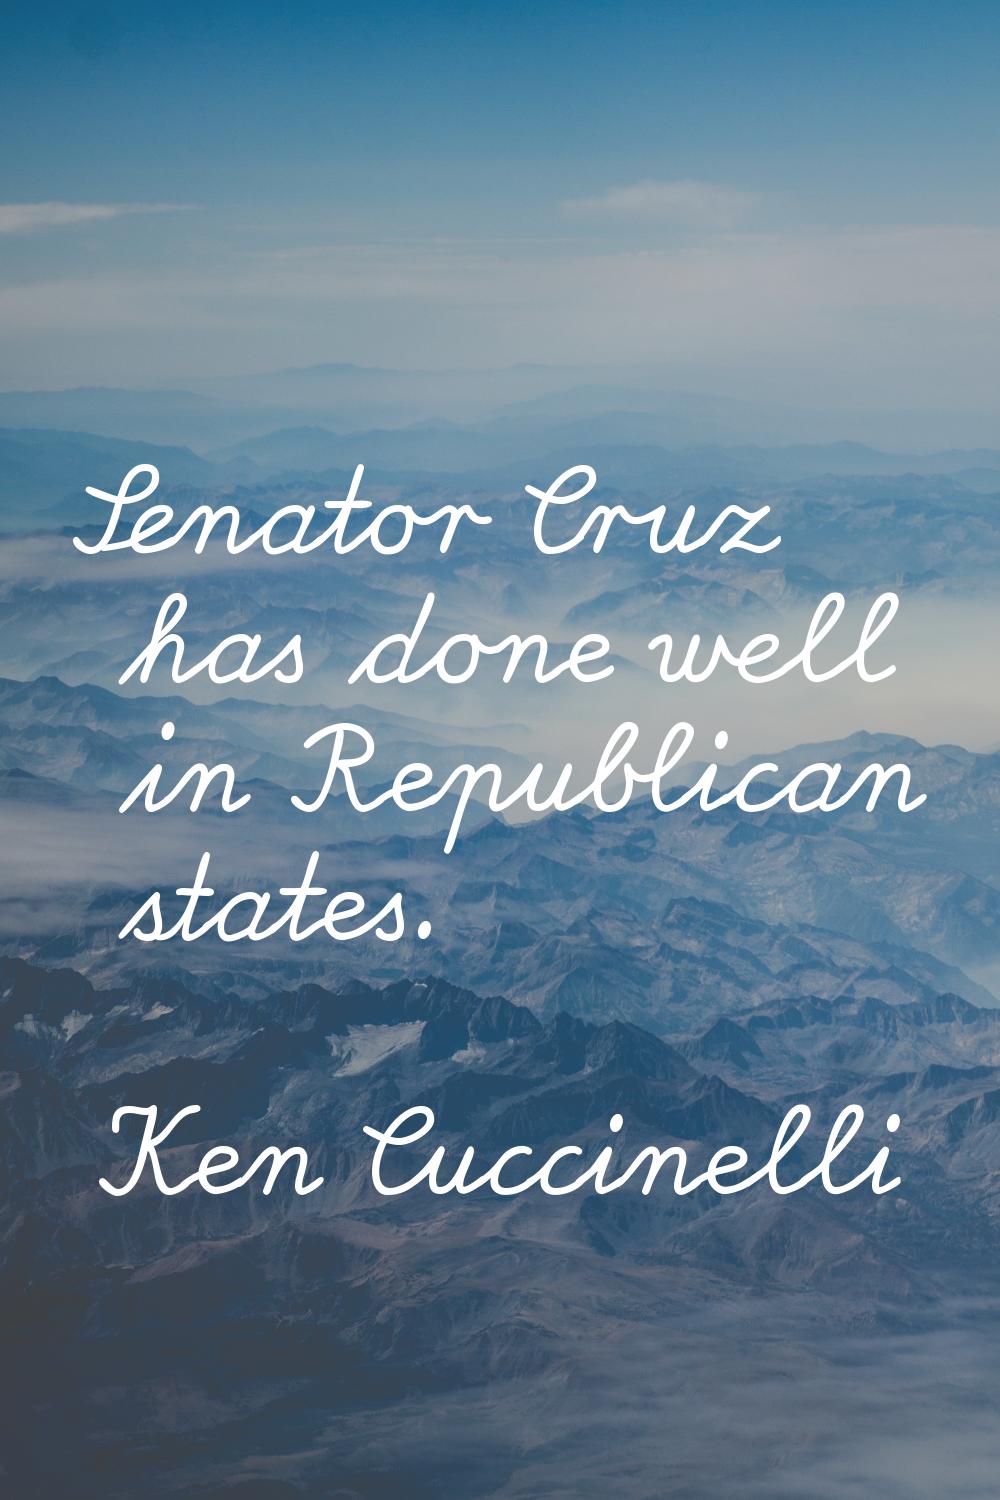 Senator Cruz has done well in Republican states.